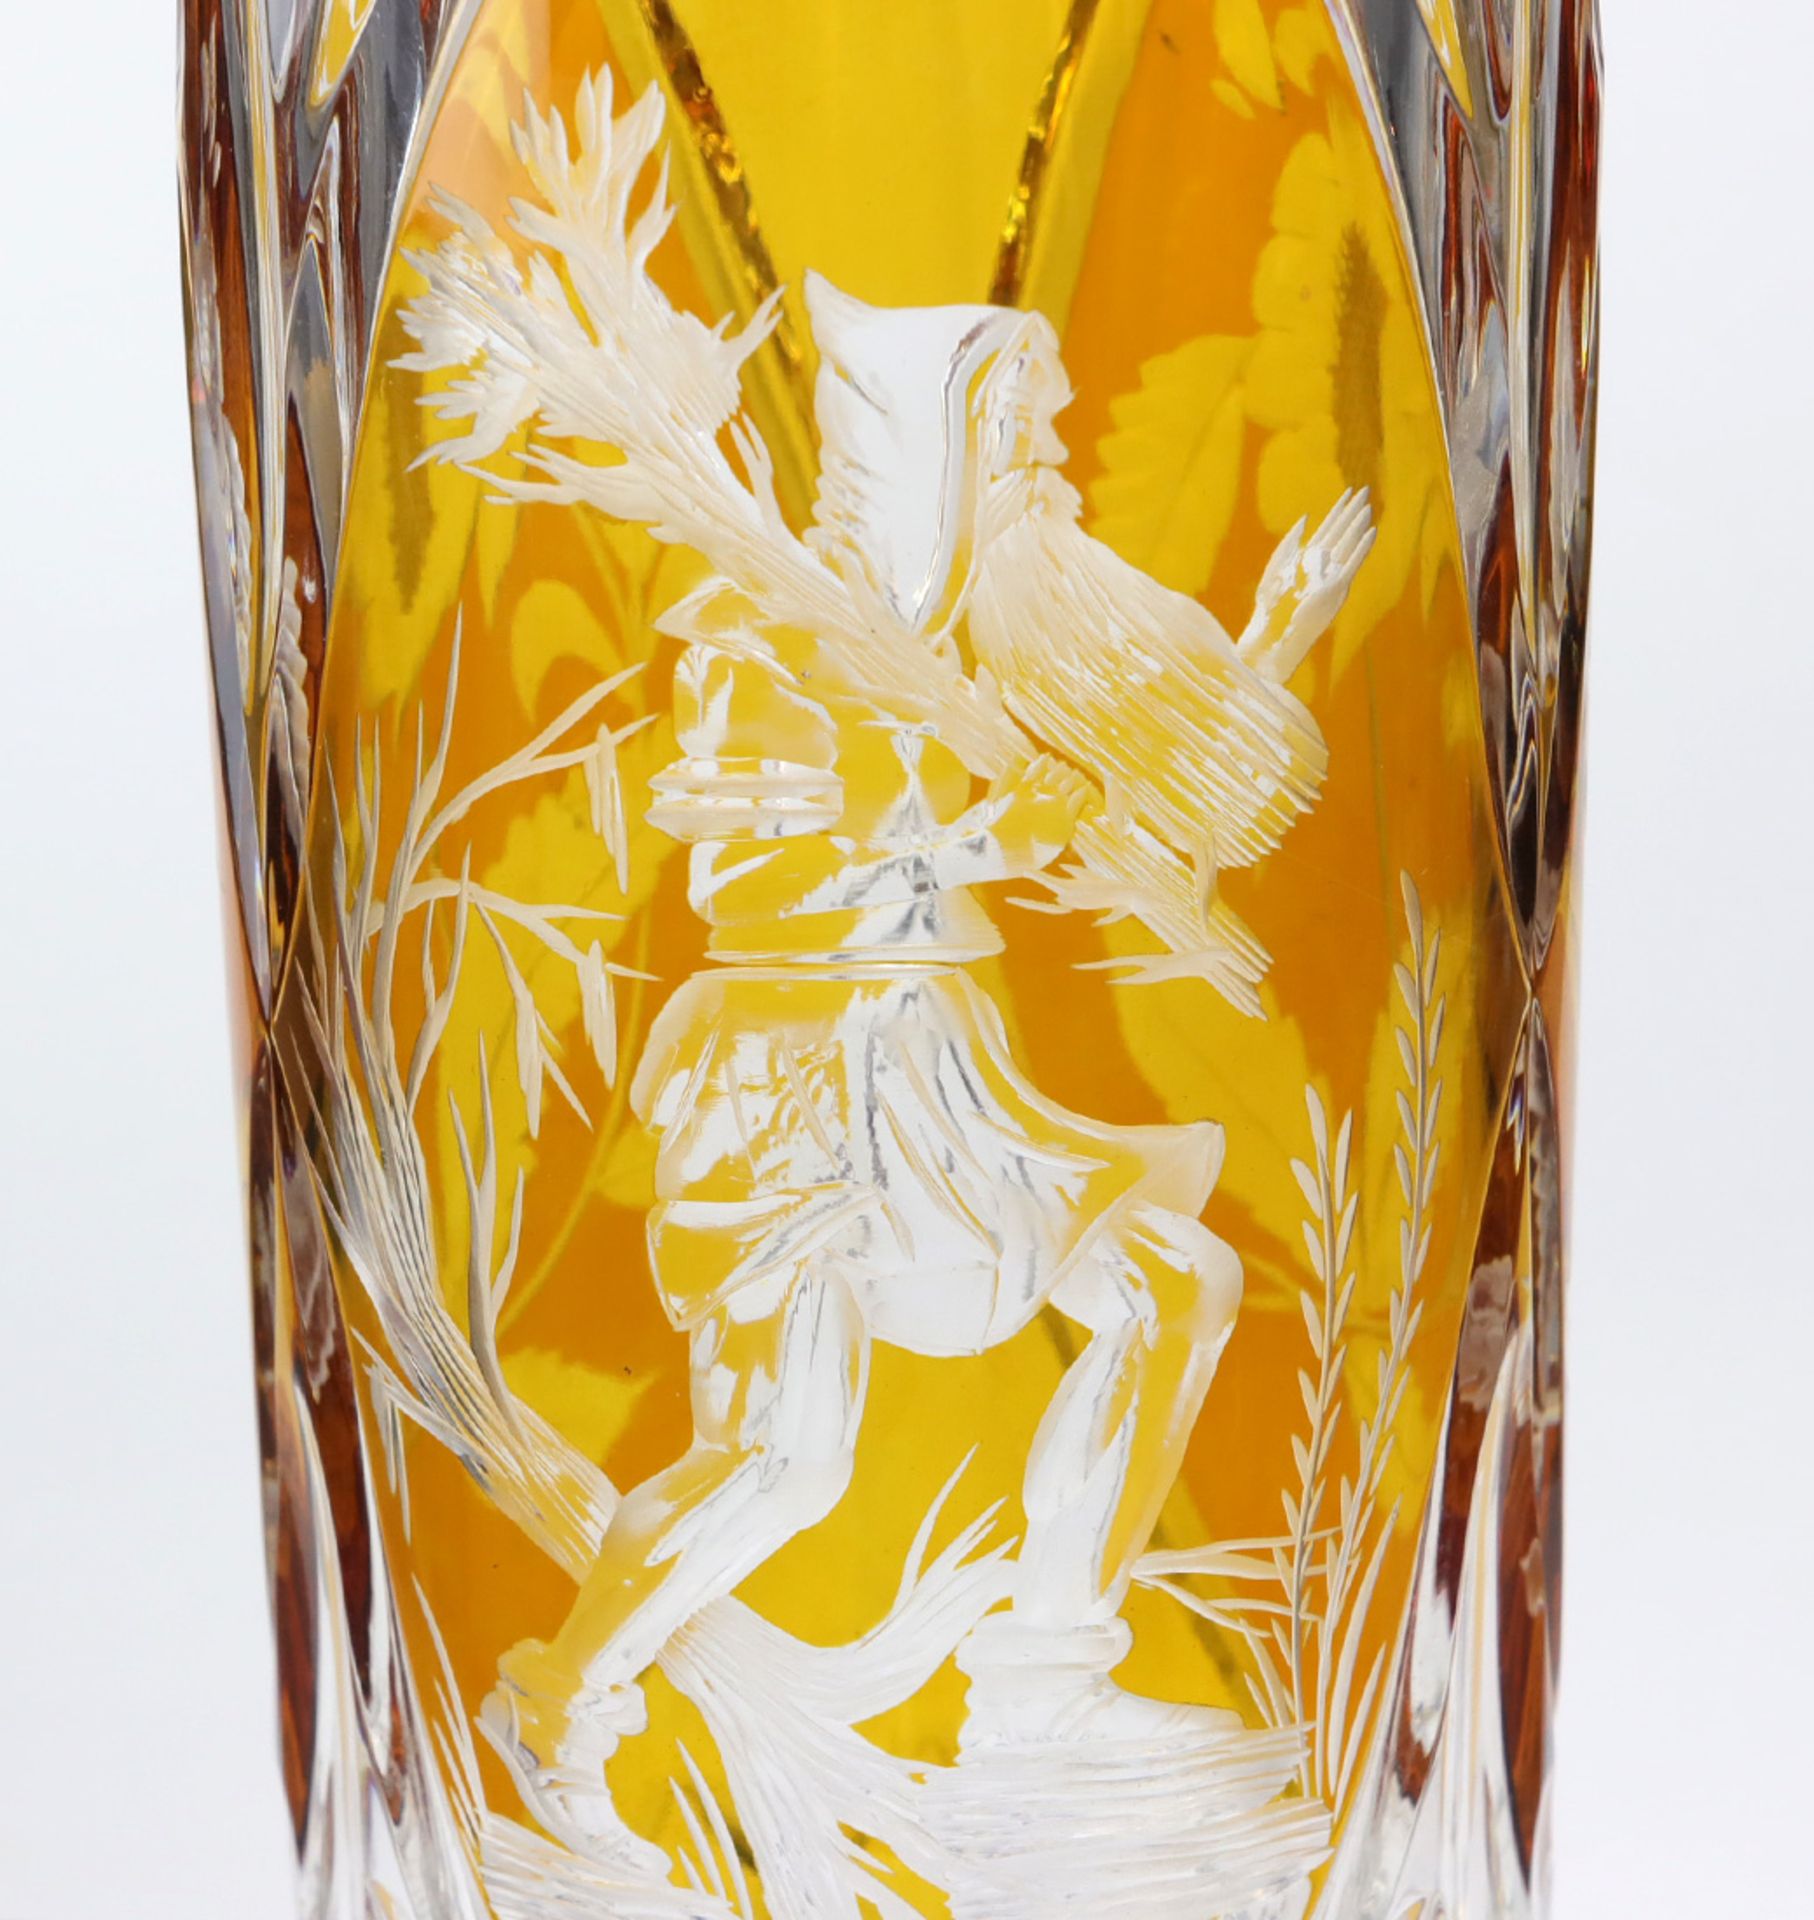 Stangenvase mit Rübezahlfarbloses Kristallglas mundgeblasen, partiell bernsteinfarbig - Bild 2 aus 2